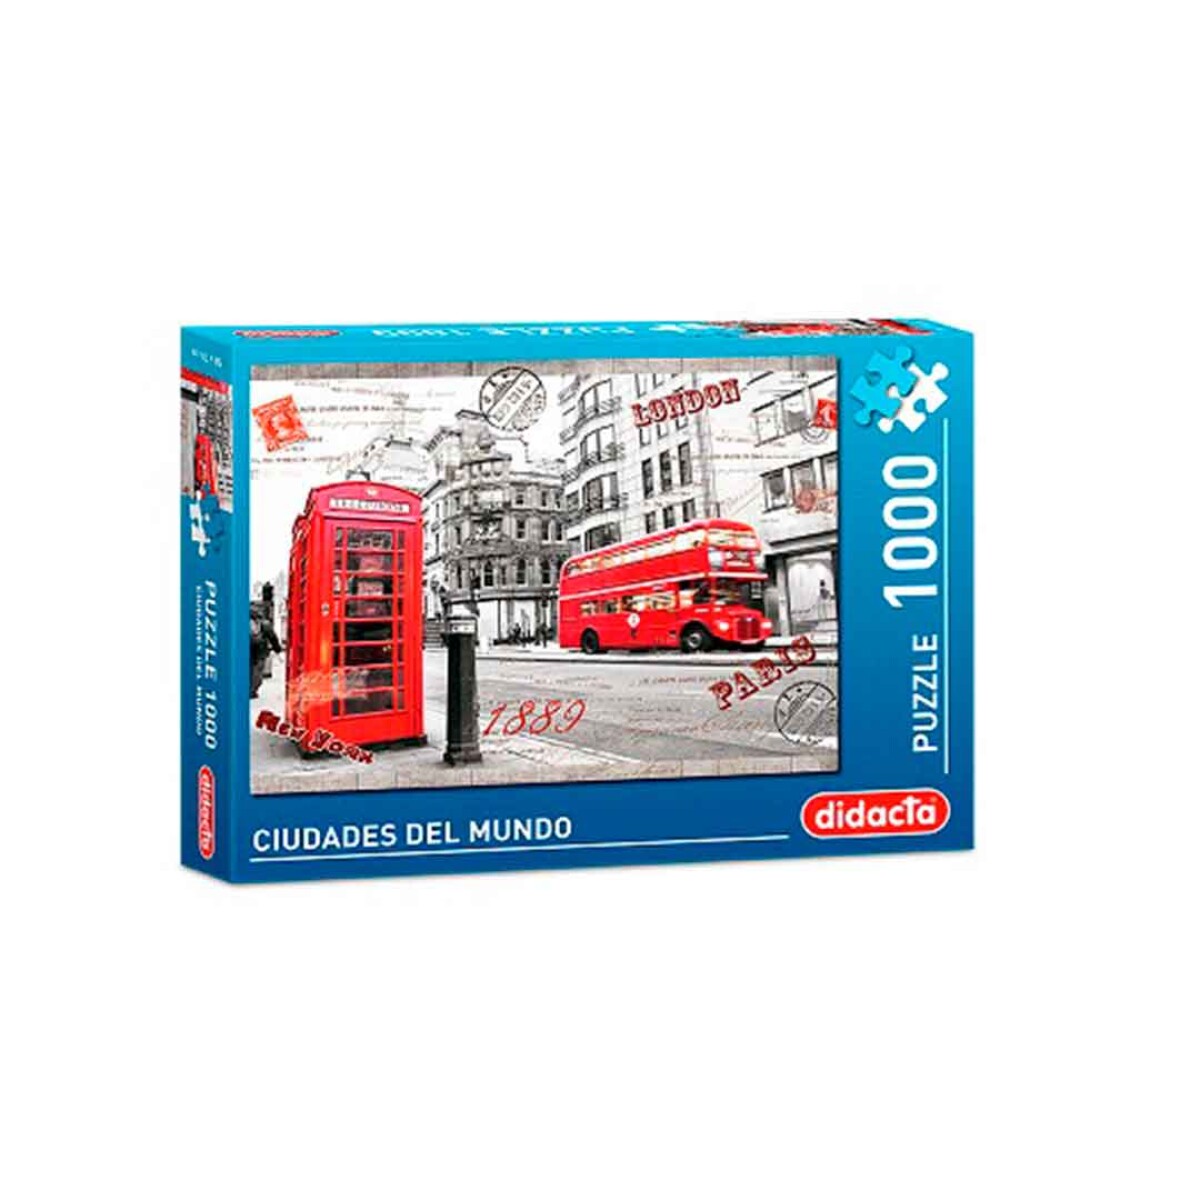 Puzzle 1000 piezas Londres Didacta Ciudades del Mundo - 001 